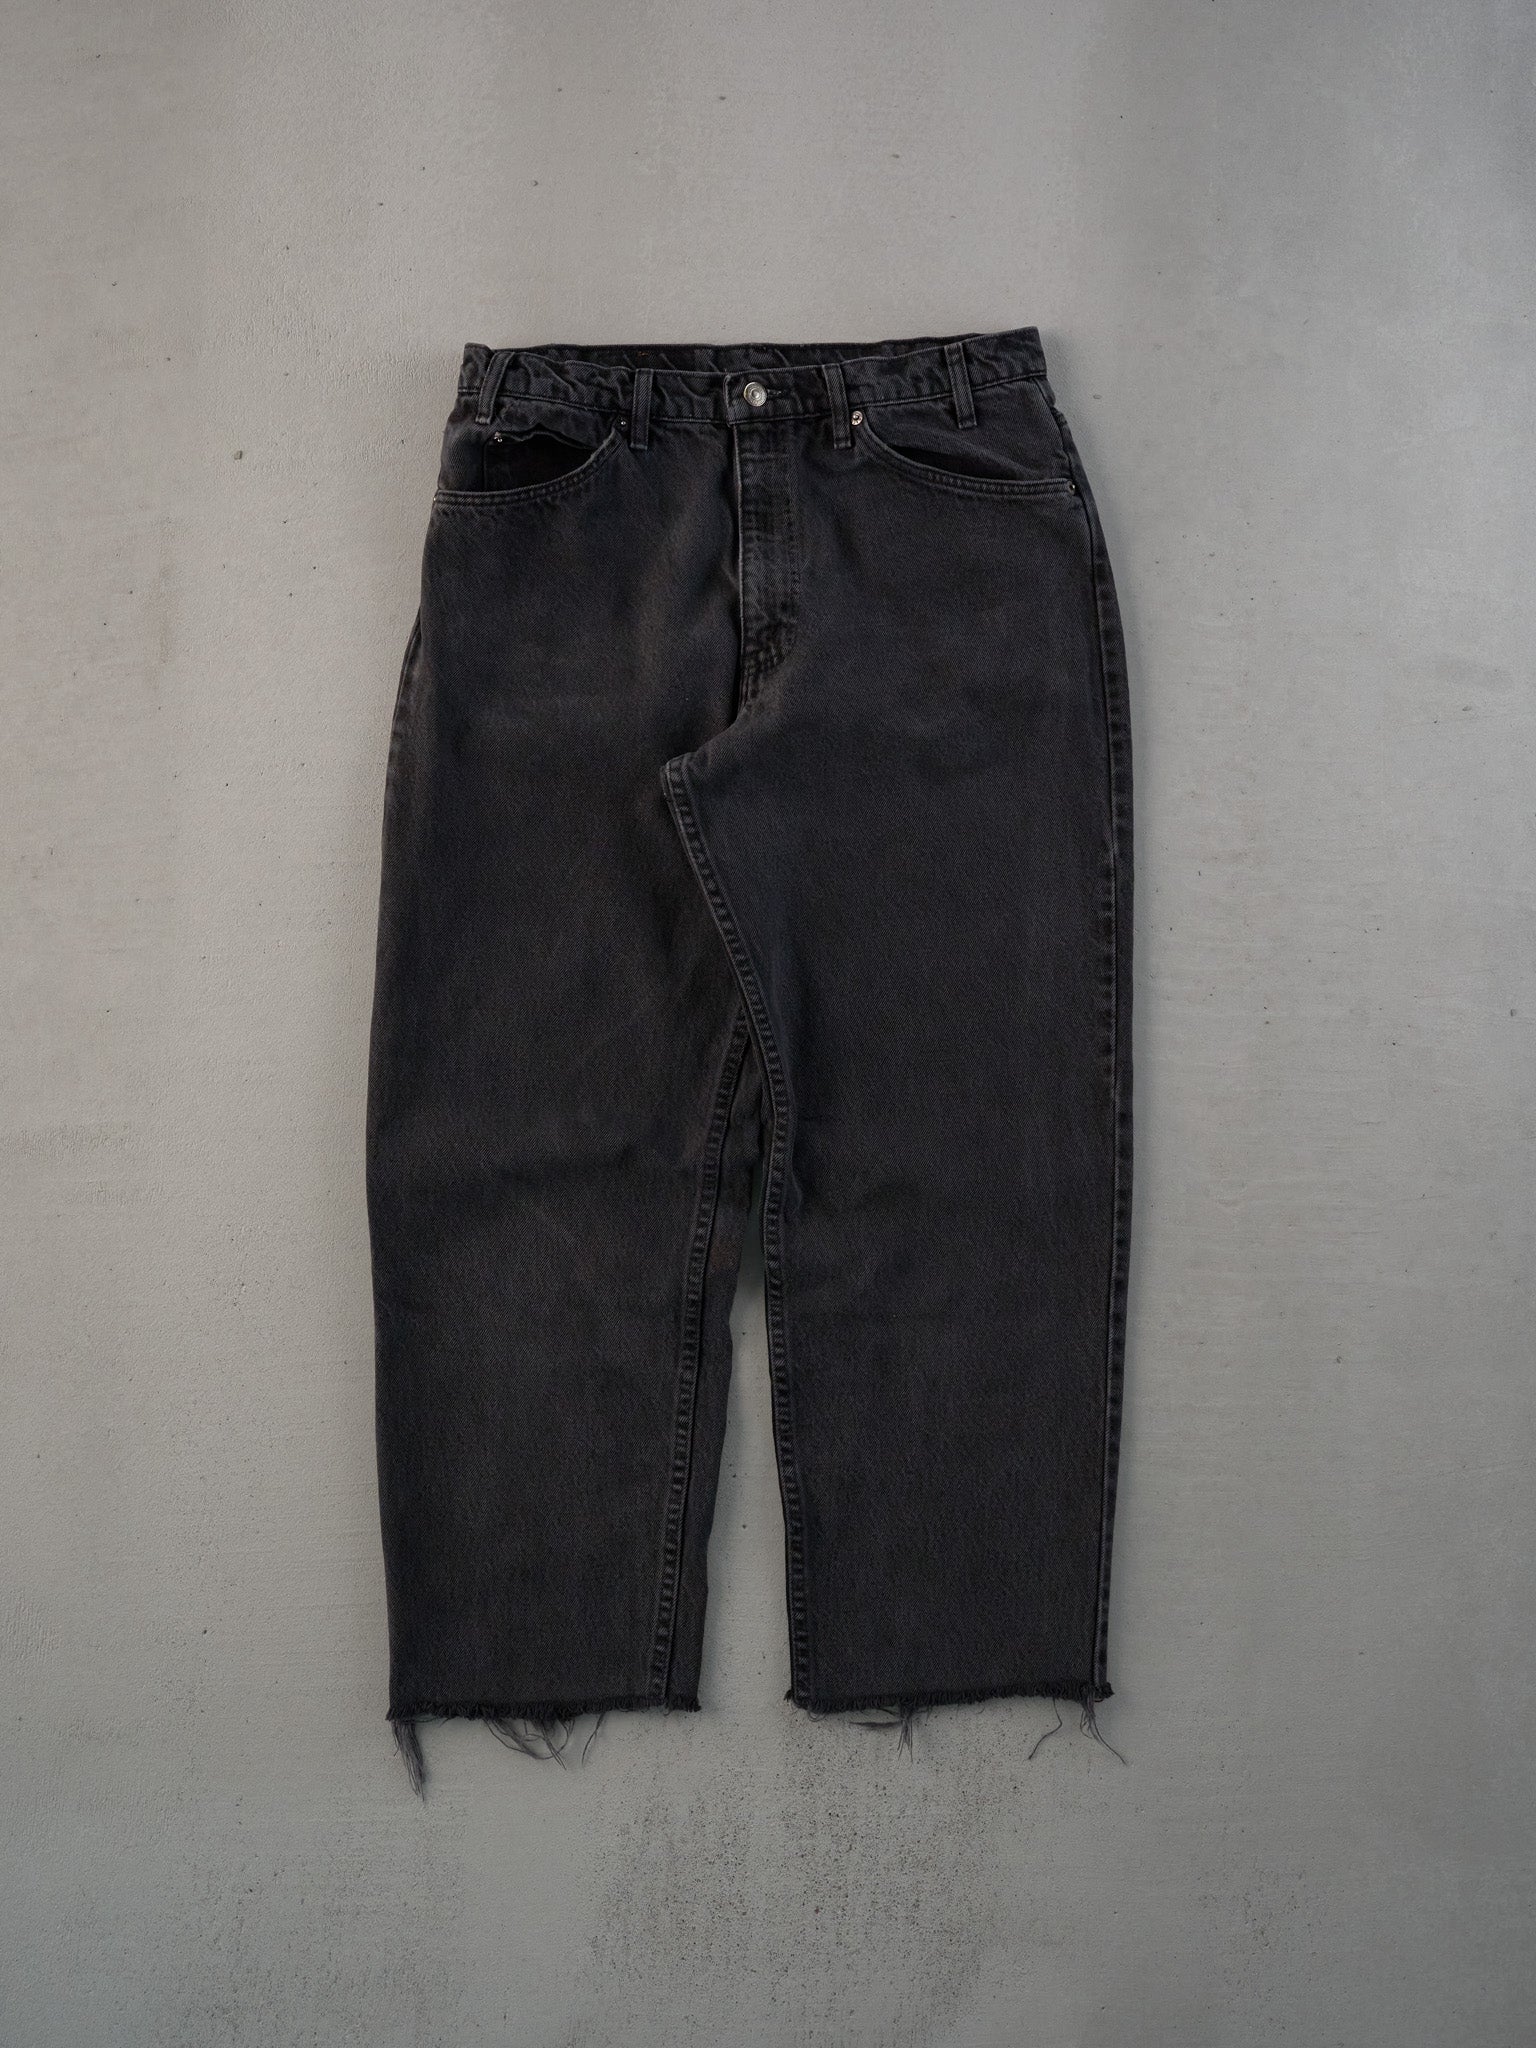 Vintage 90s Black Levi's Denim Jeans (31x26)